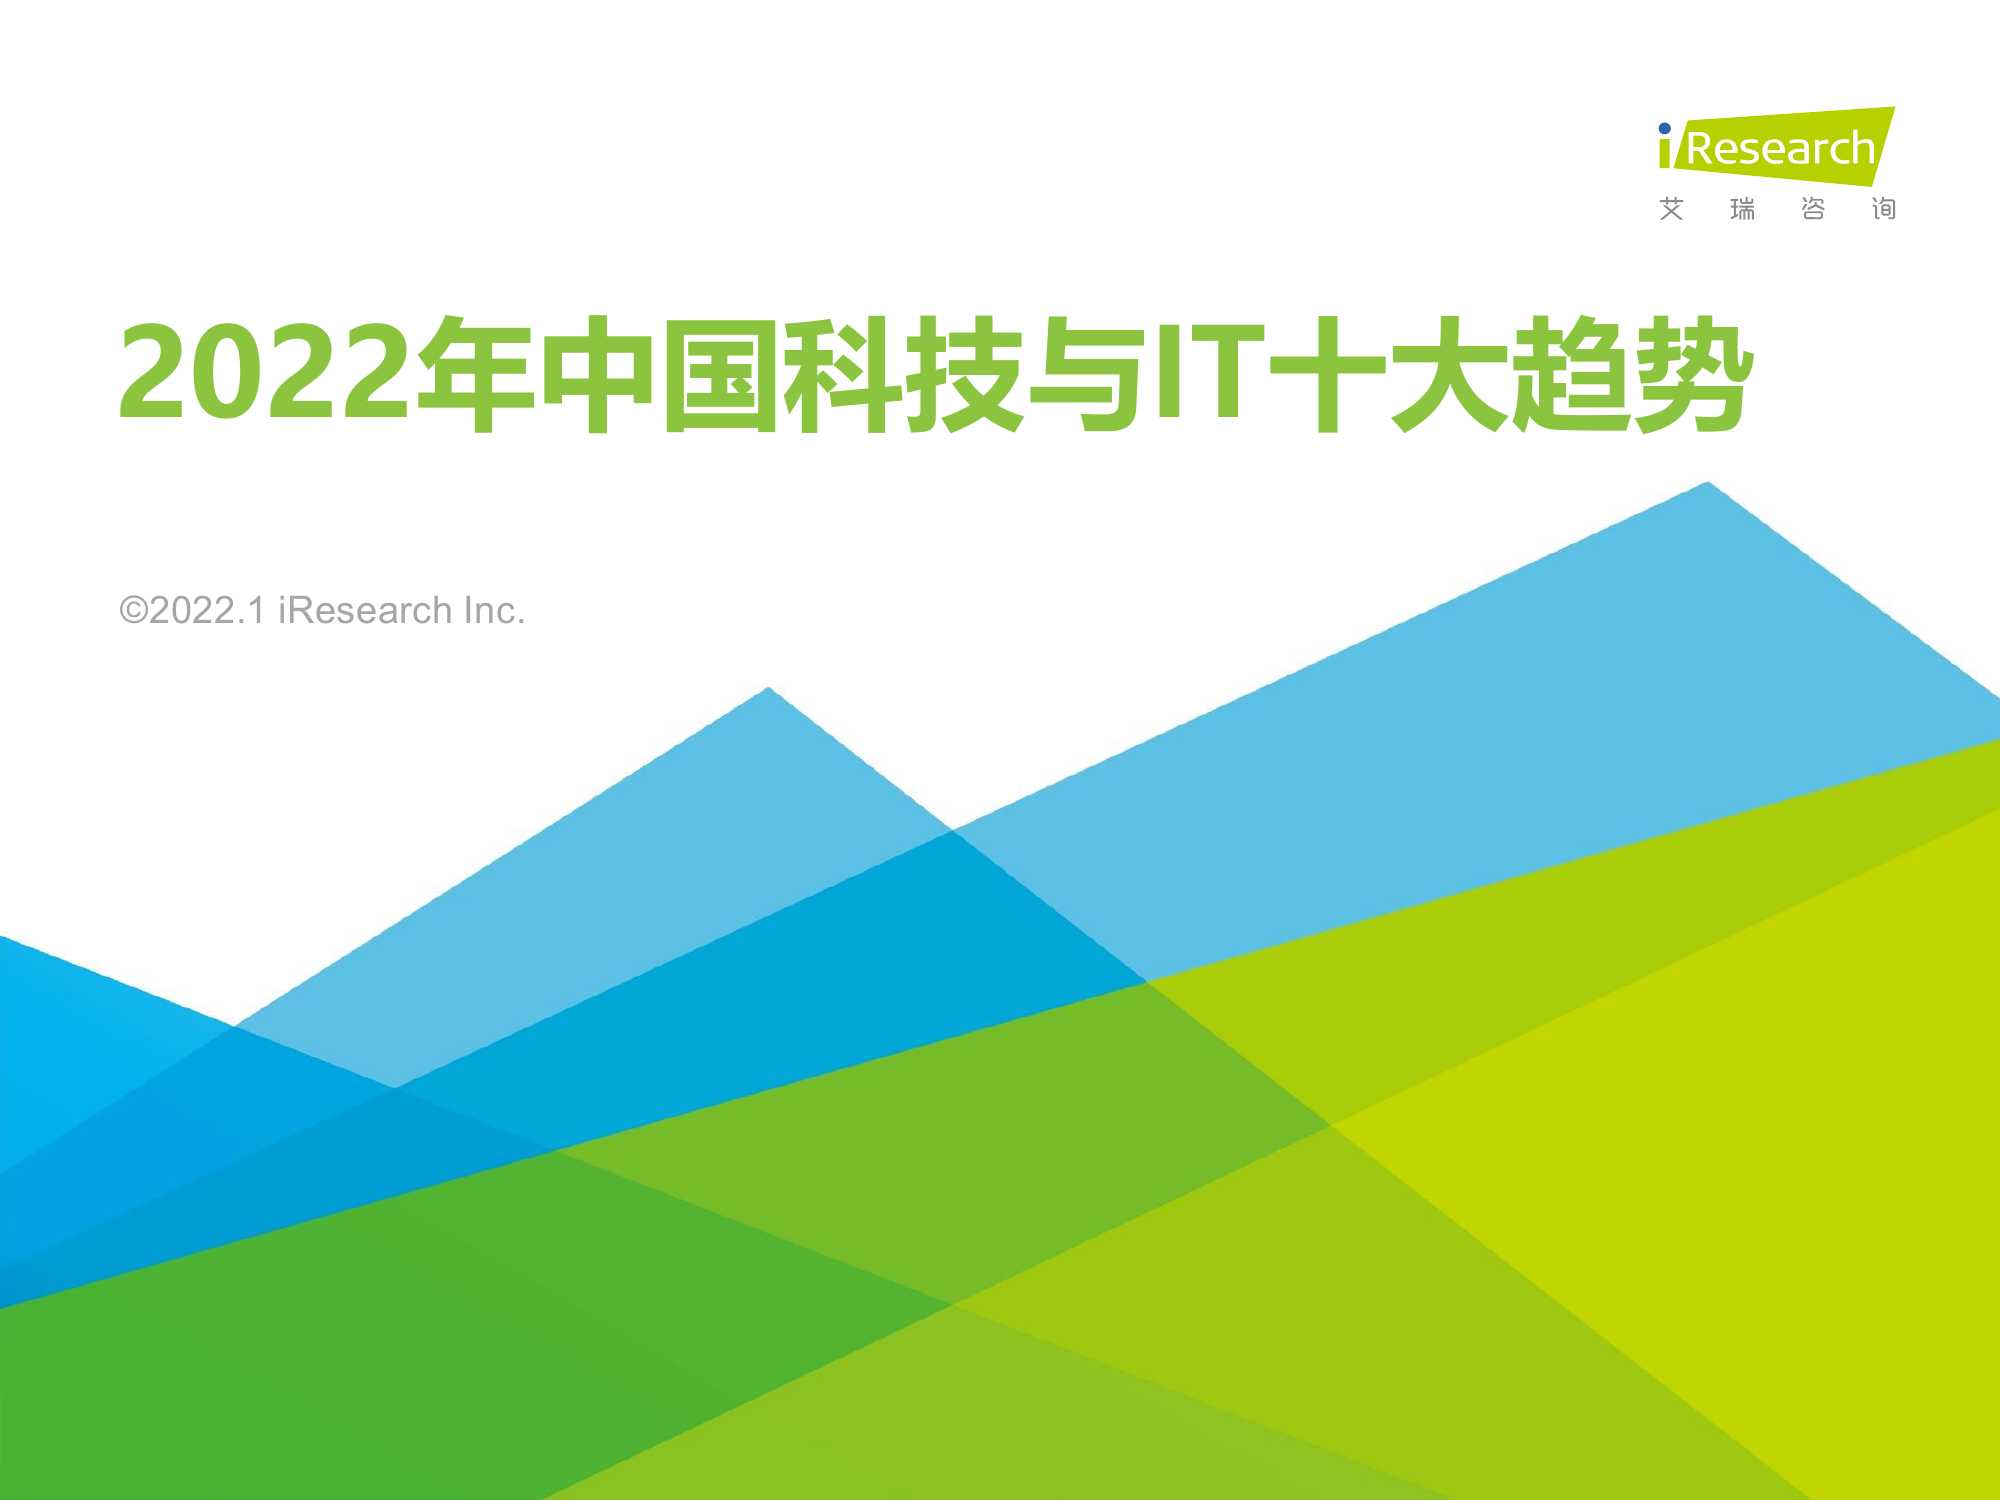 2022年中国科技与IT十大趋势报告